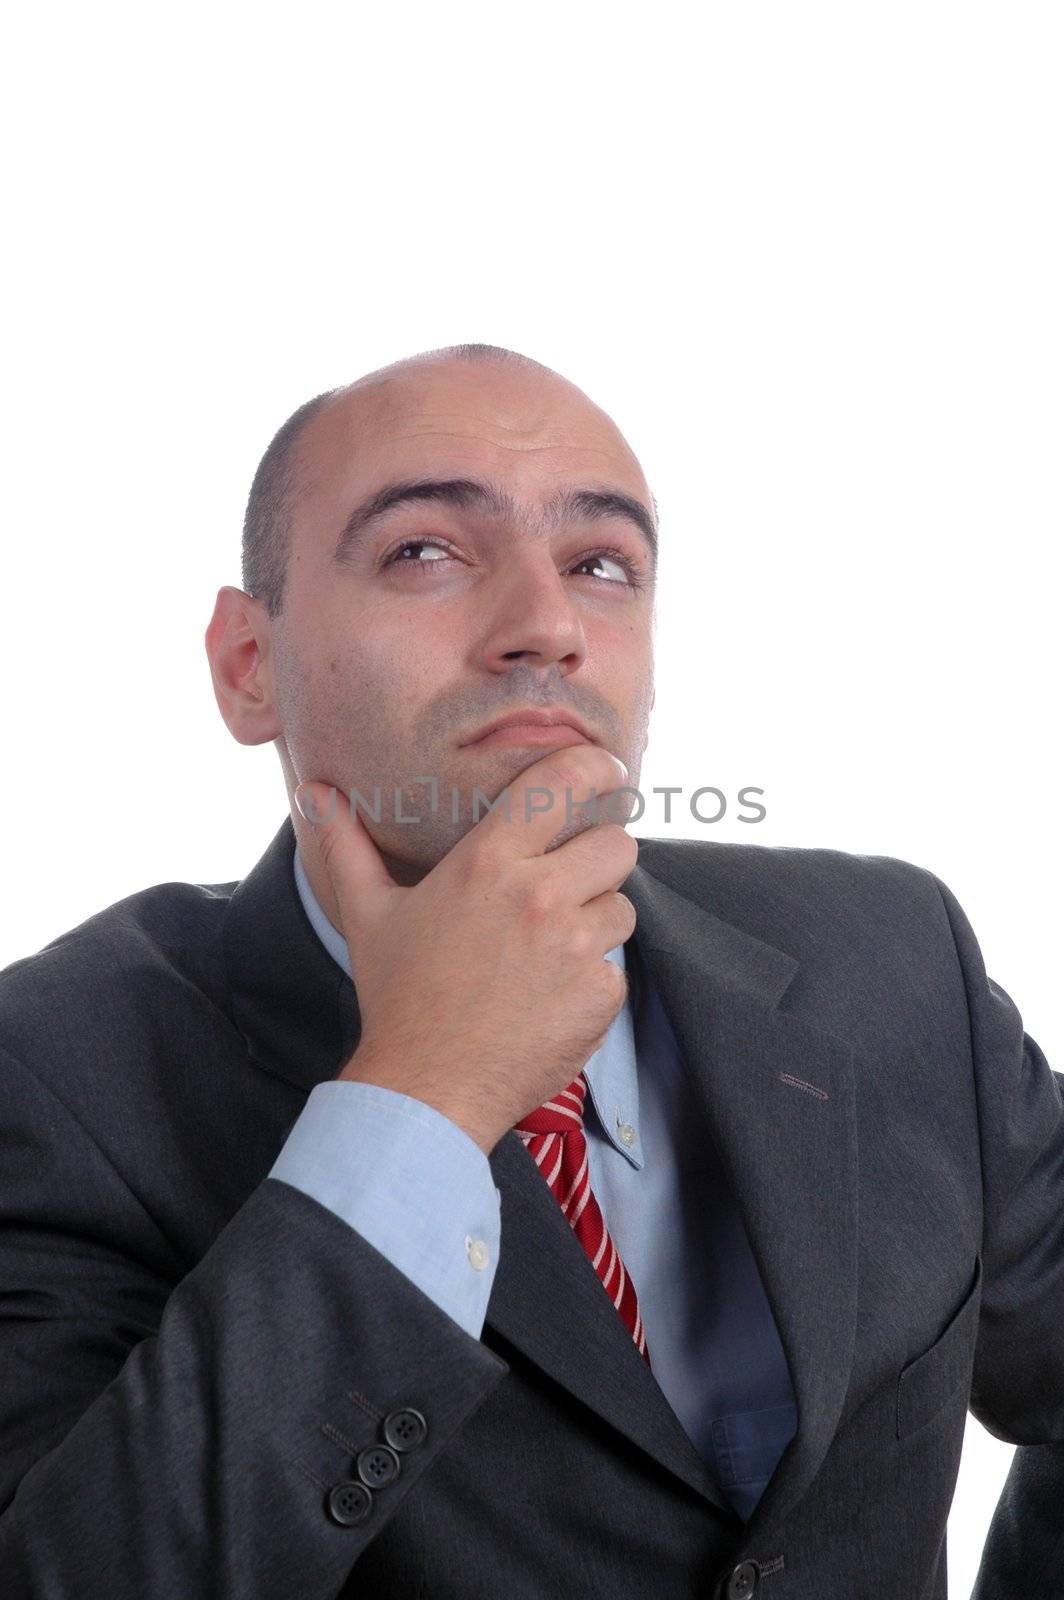 bald businessman thinking isolated on white background